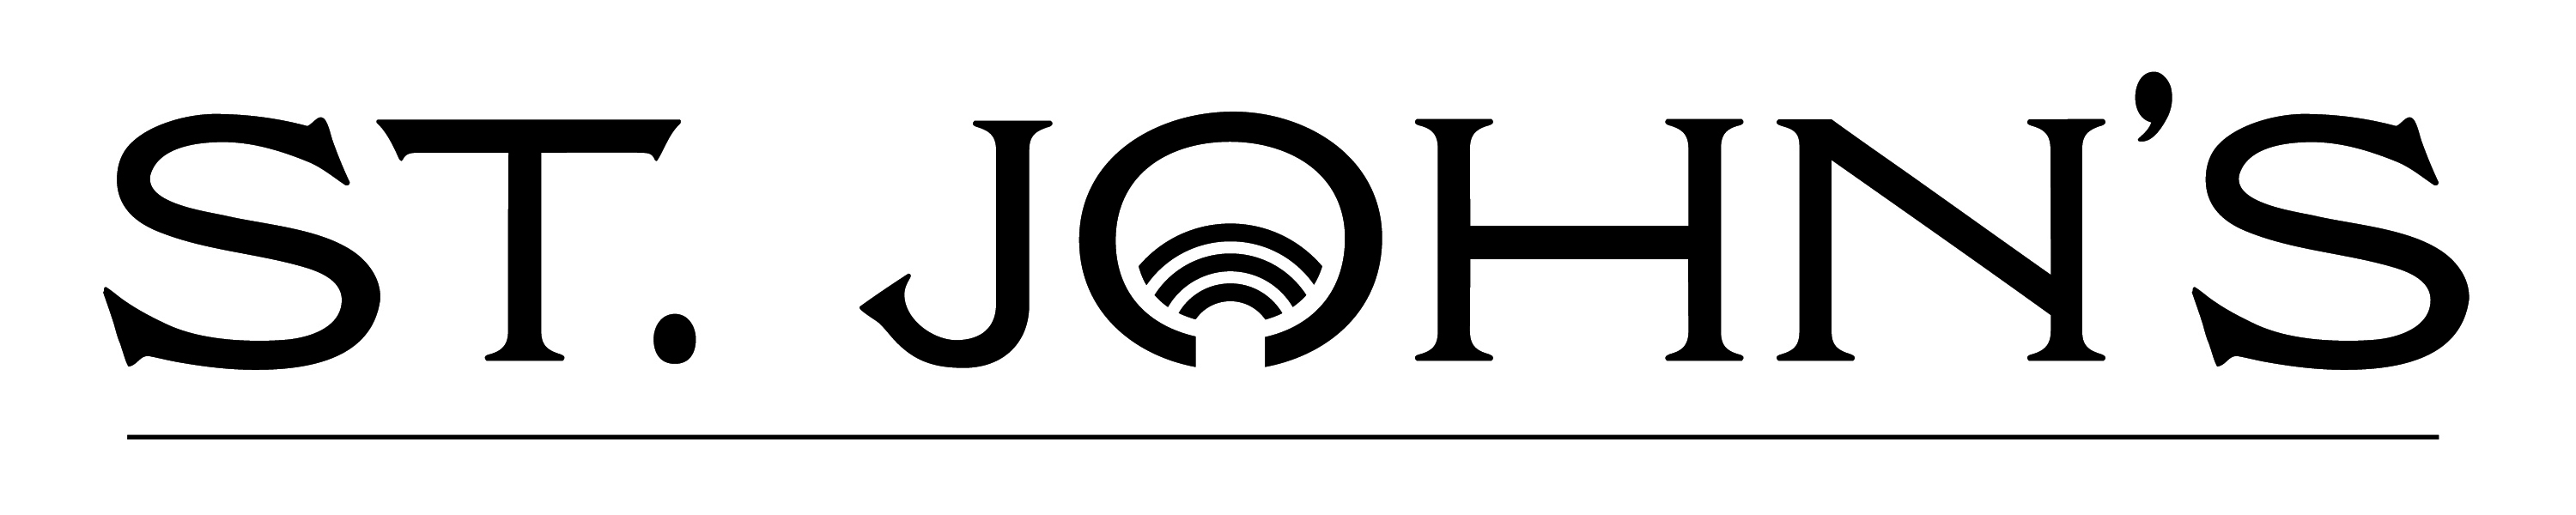 City of St. John's logo